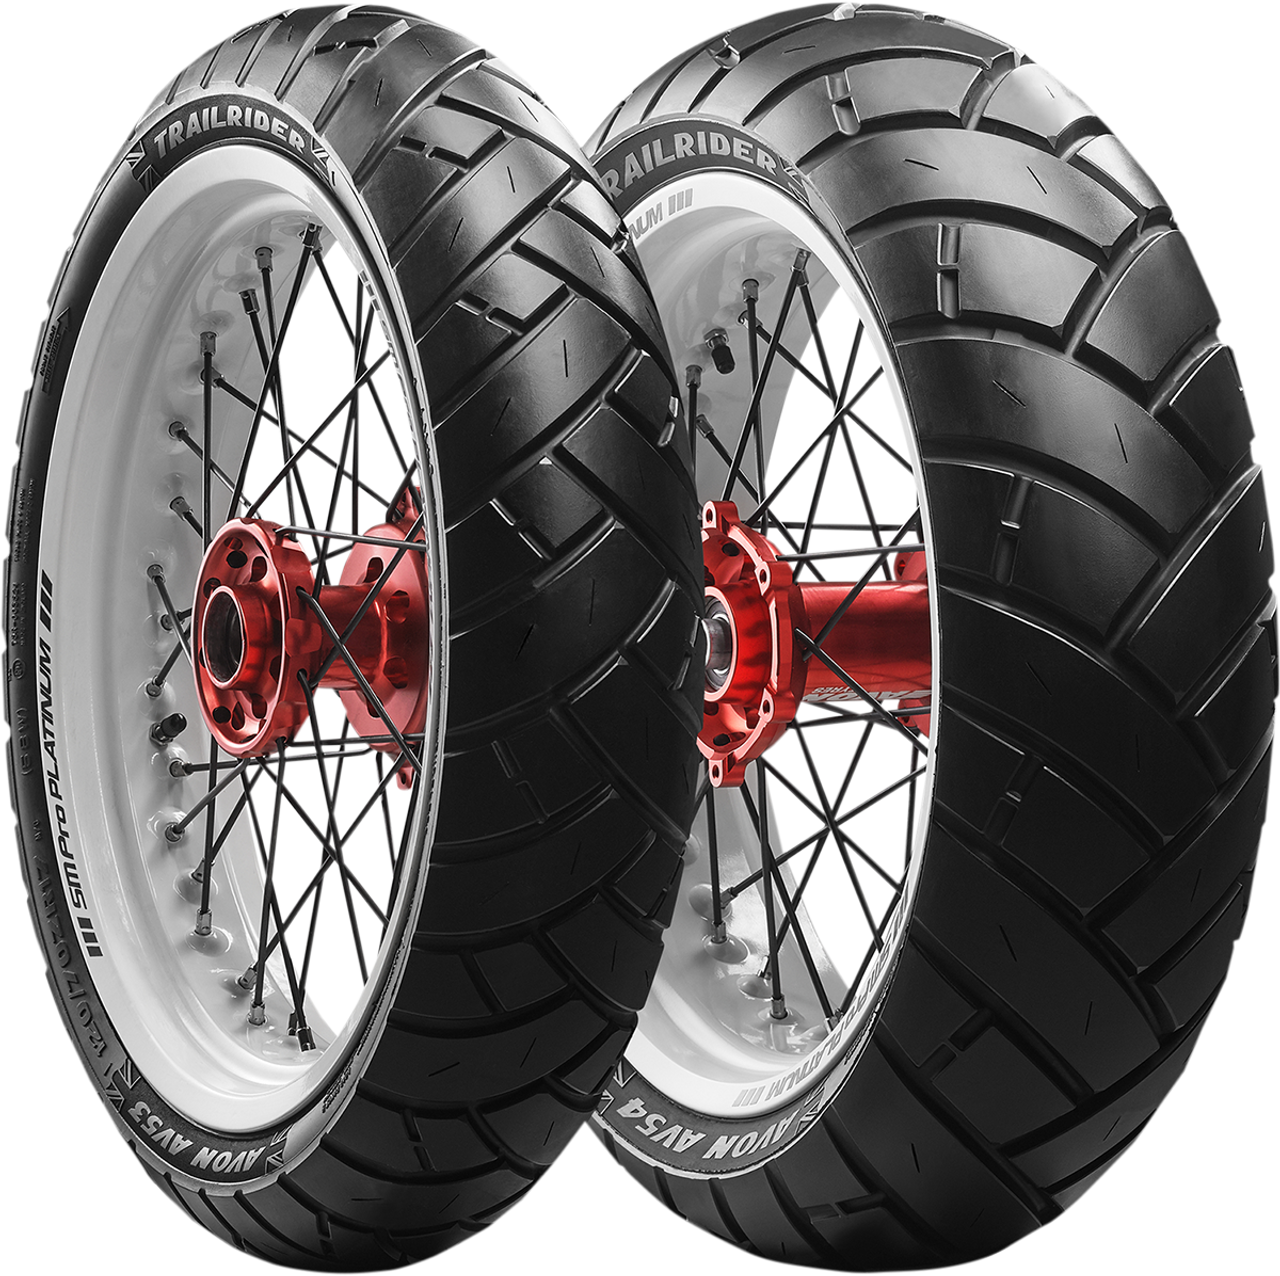 Tire - TrailRider - 120/90-17 - 64S